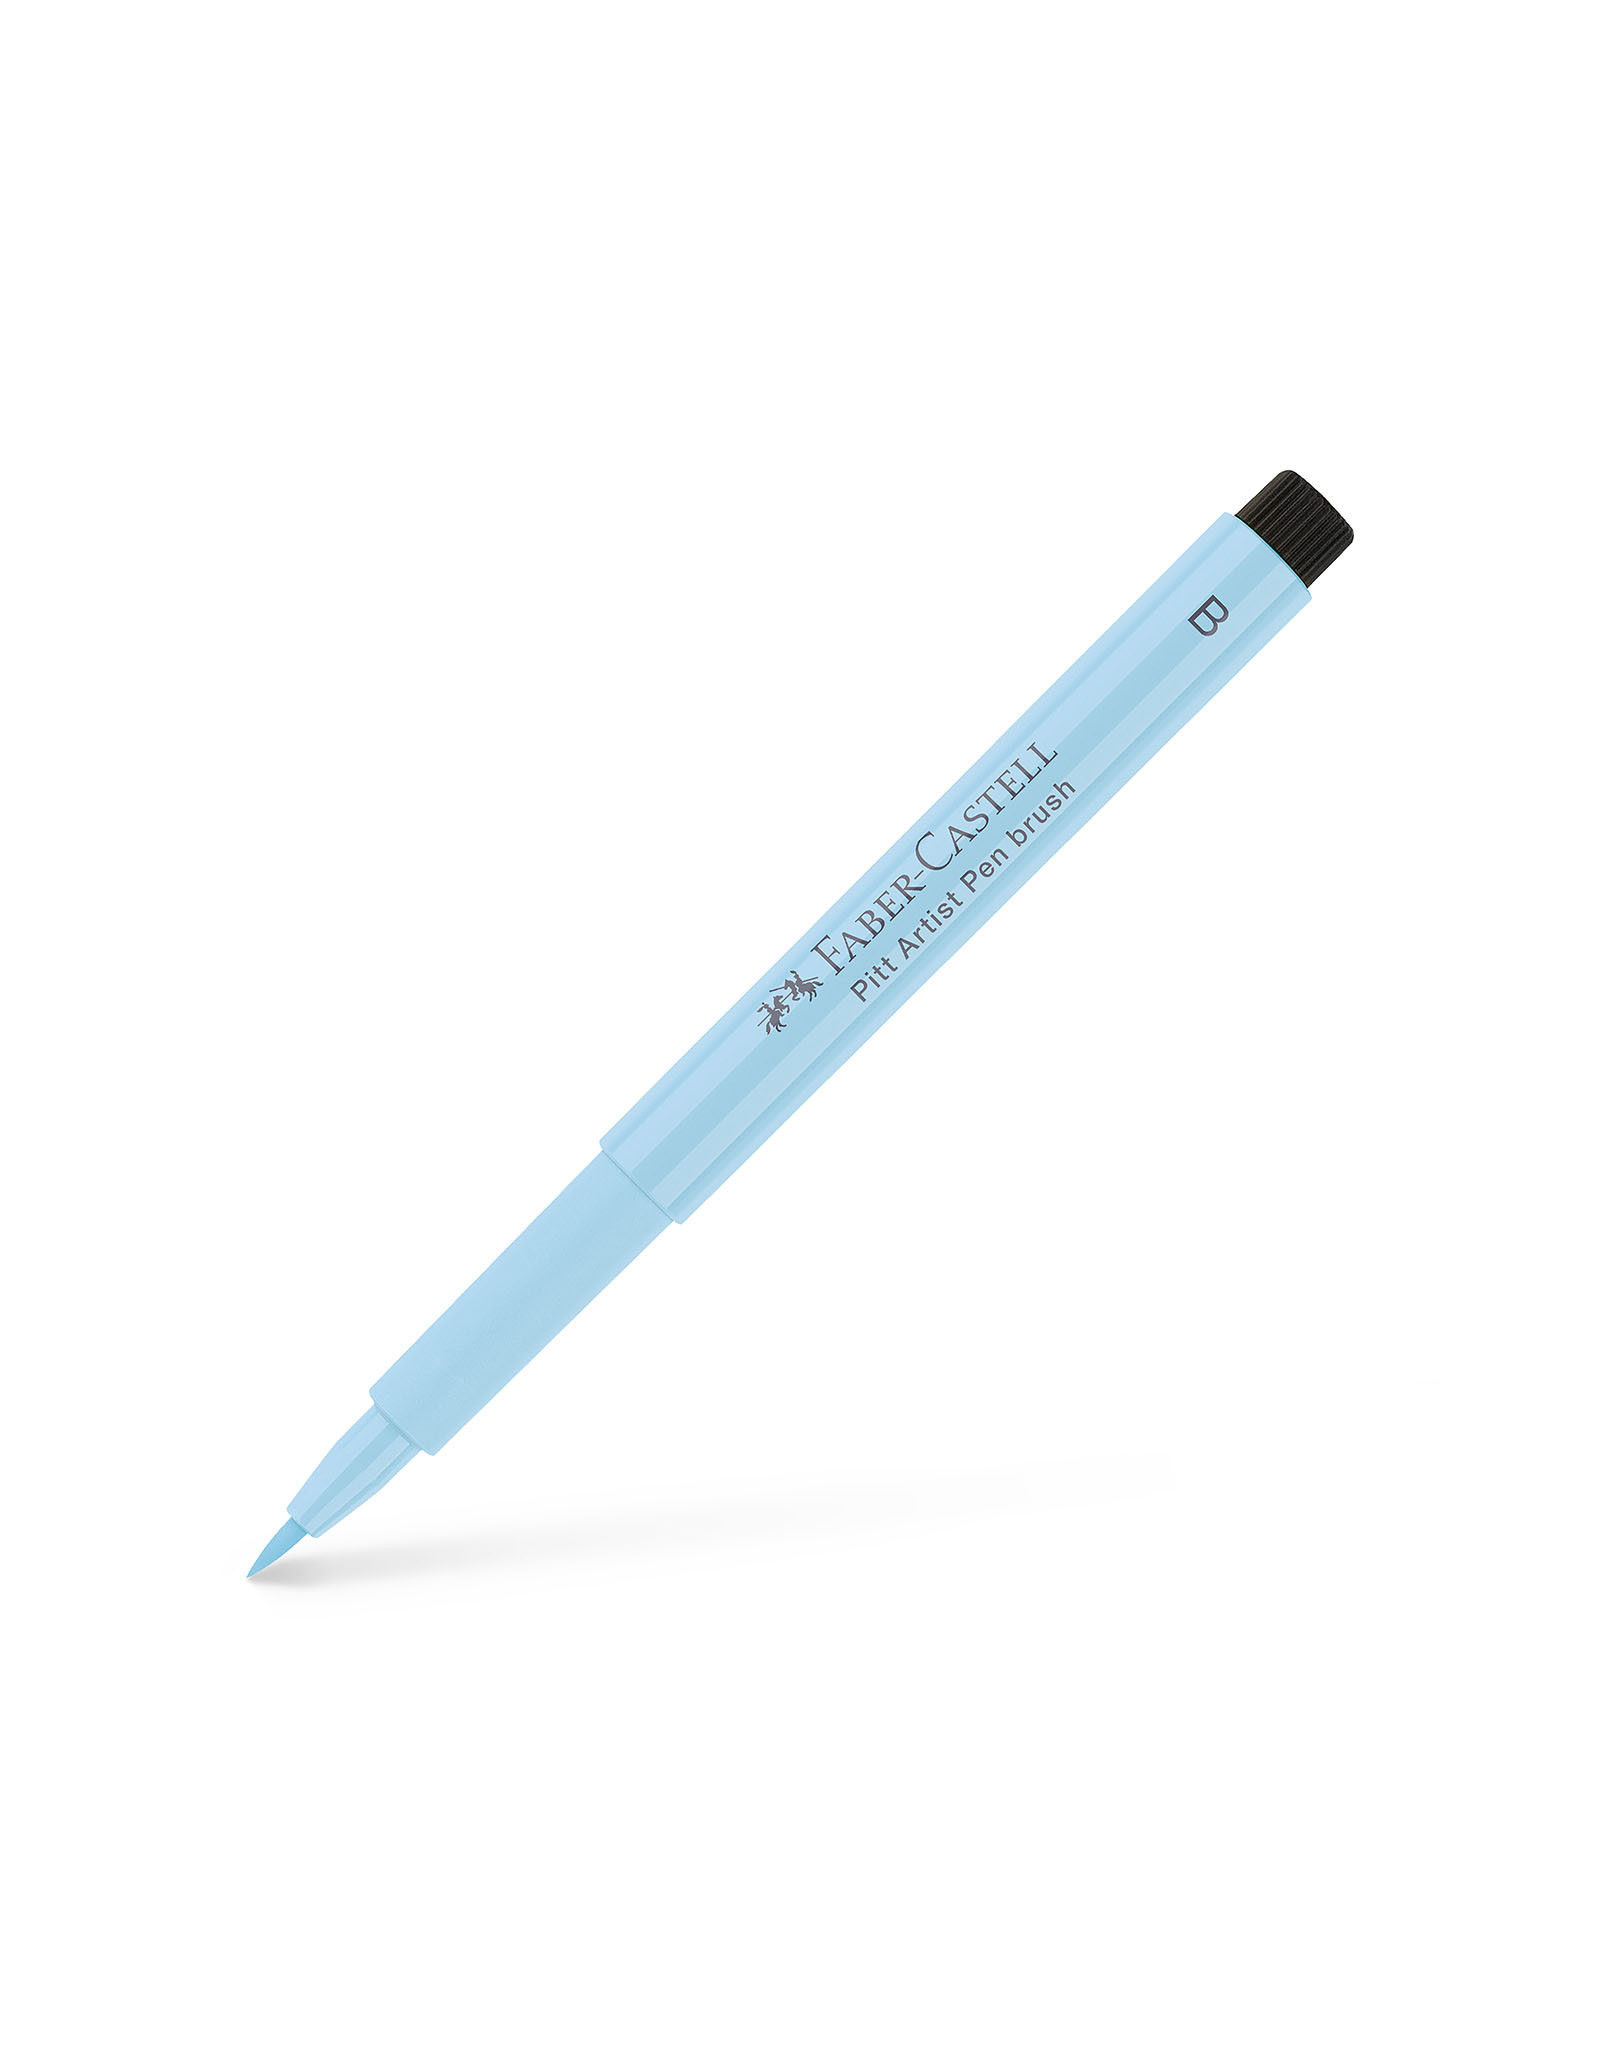 FABER-CASTELL Pitt Artist Pen, Brush, Ice Blue